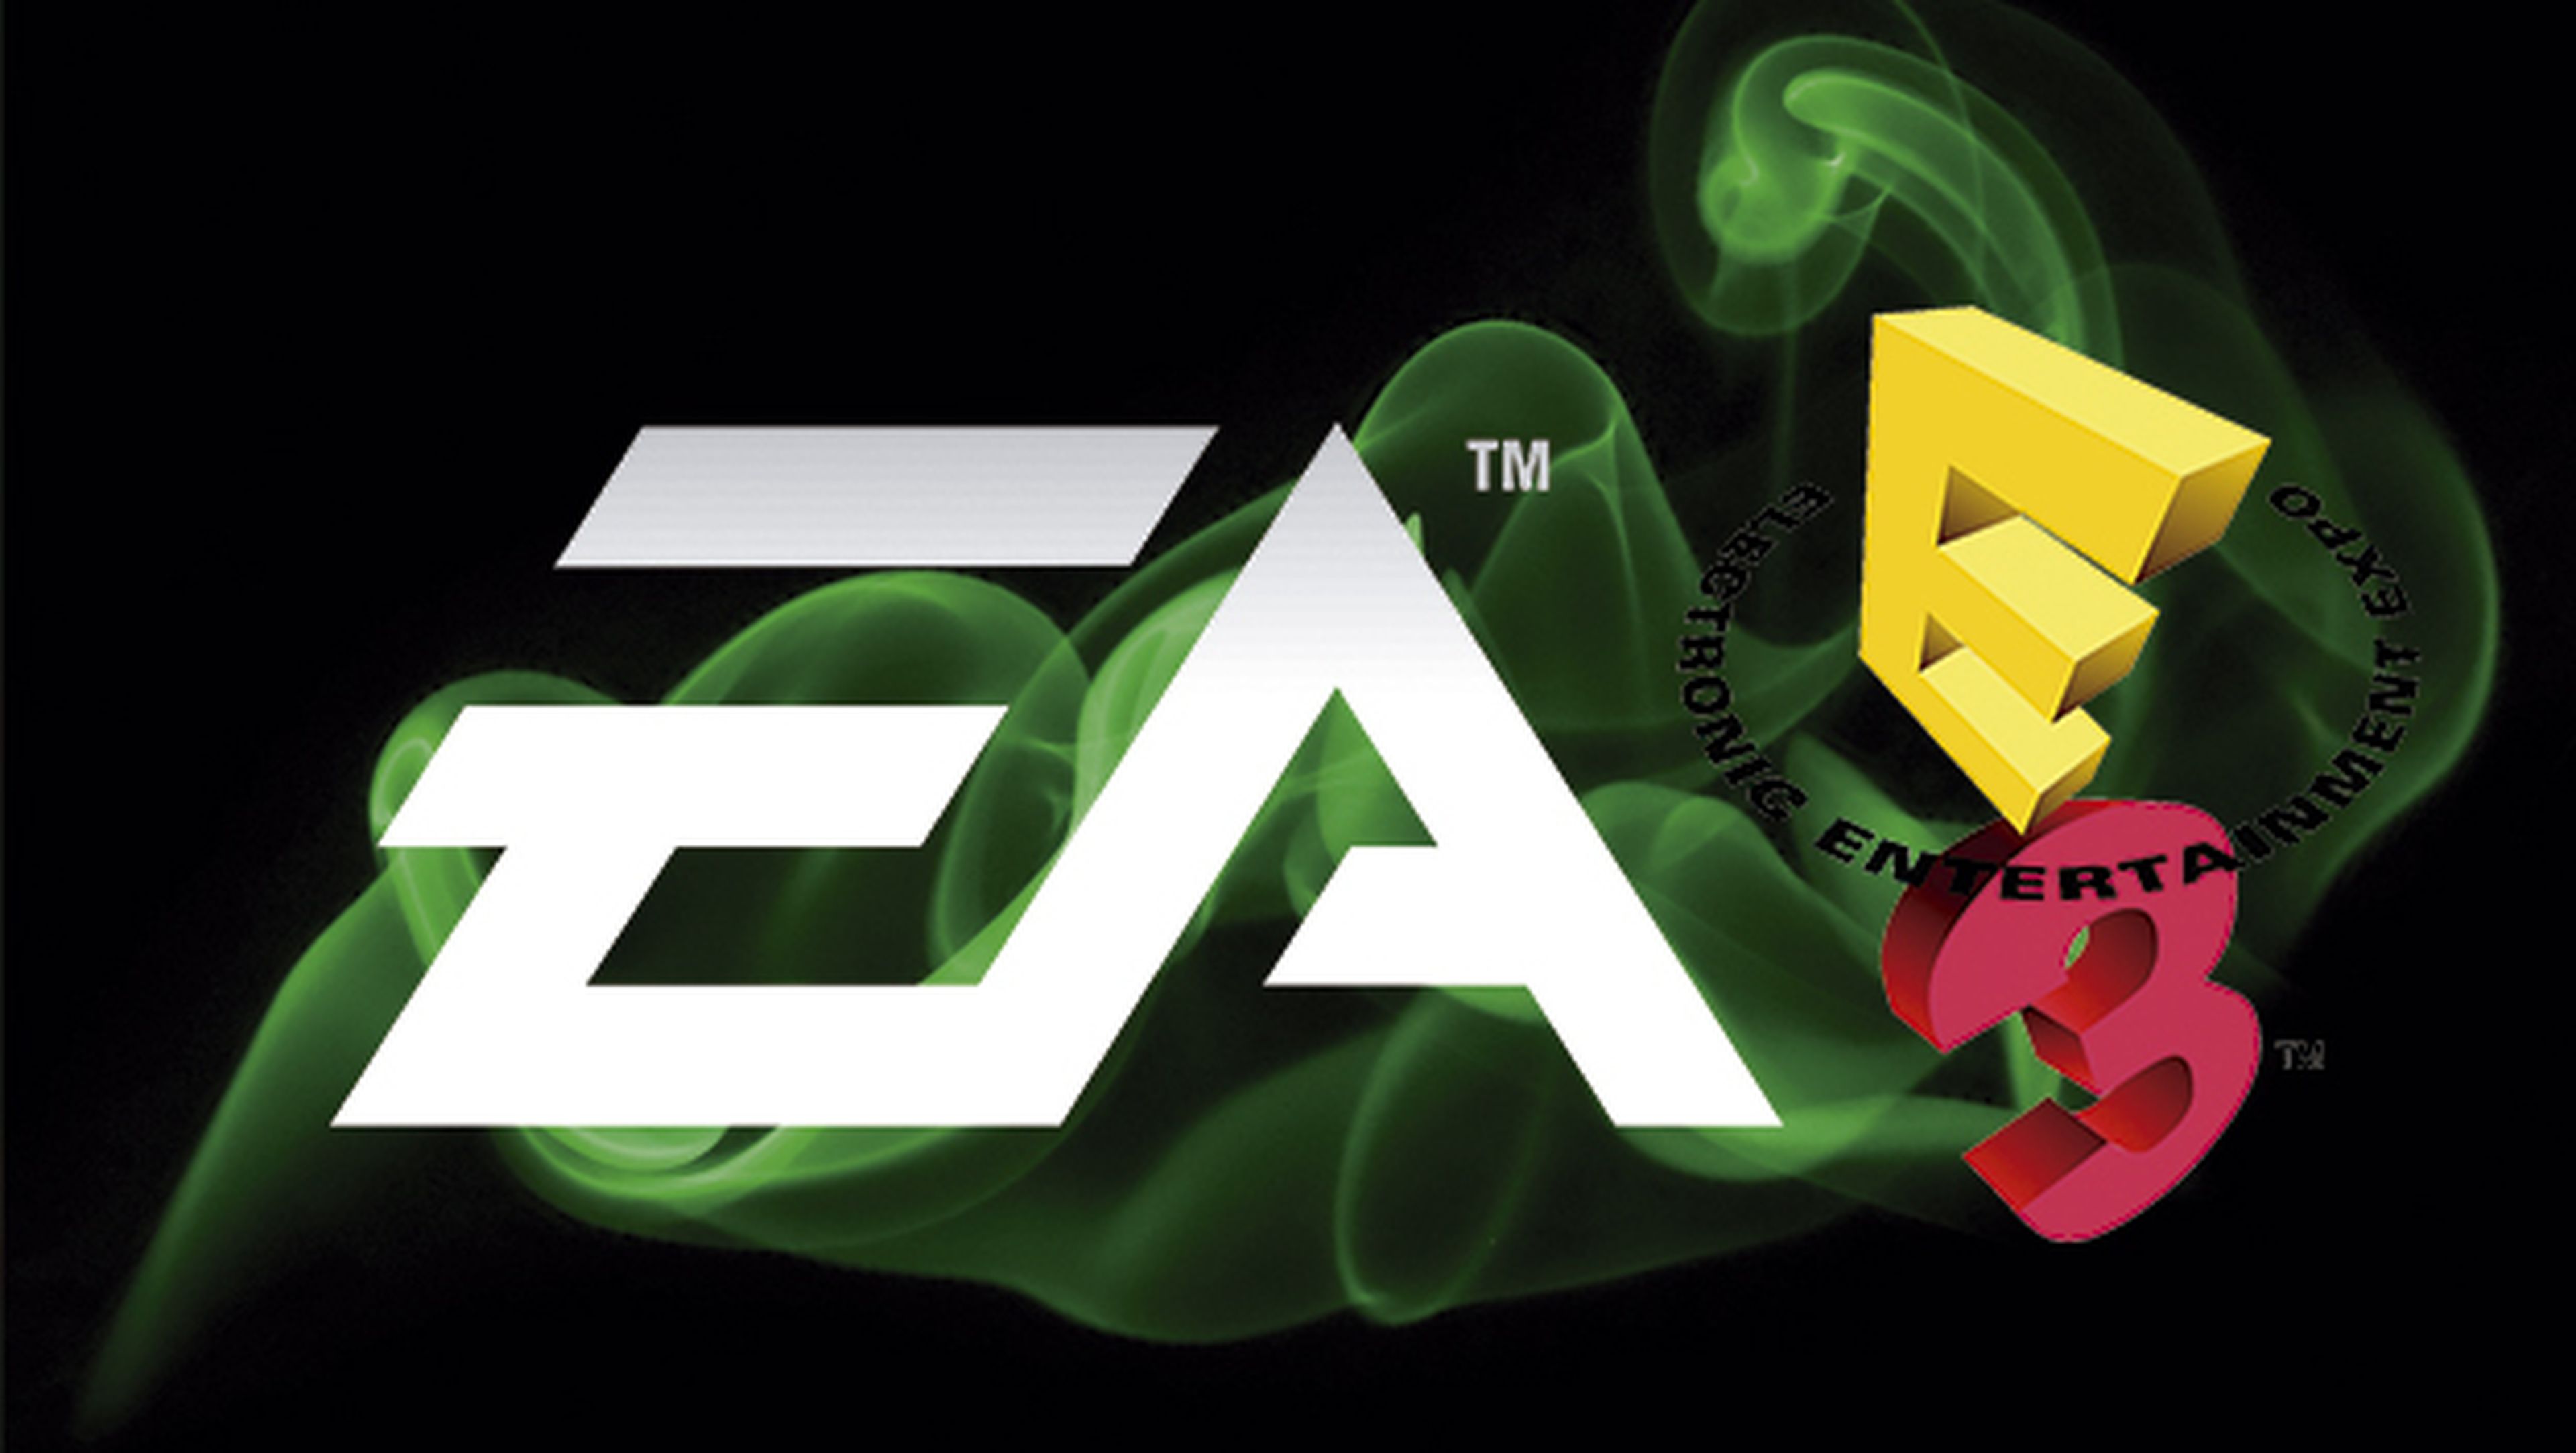 Ver en streaming online la conferencia de EA en el E3 2015